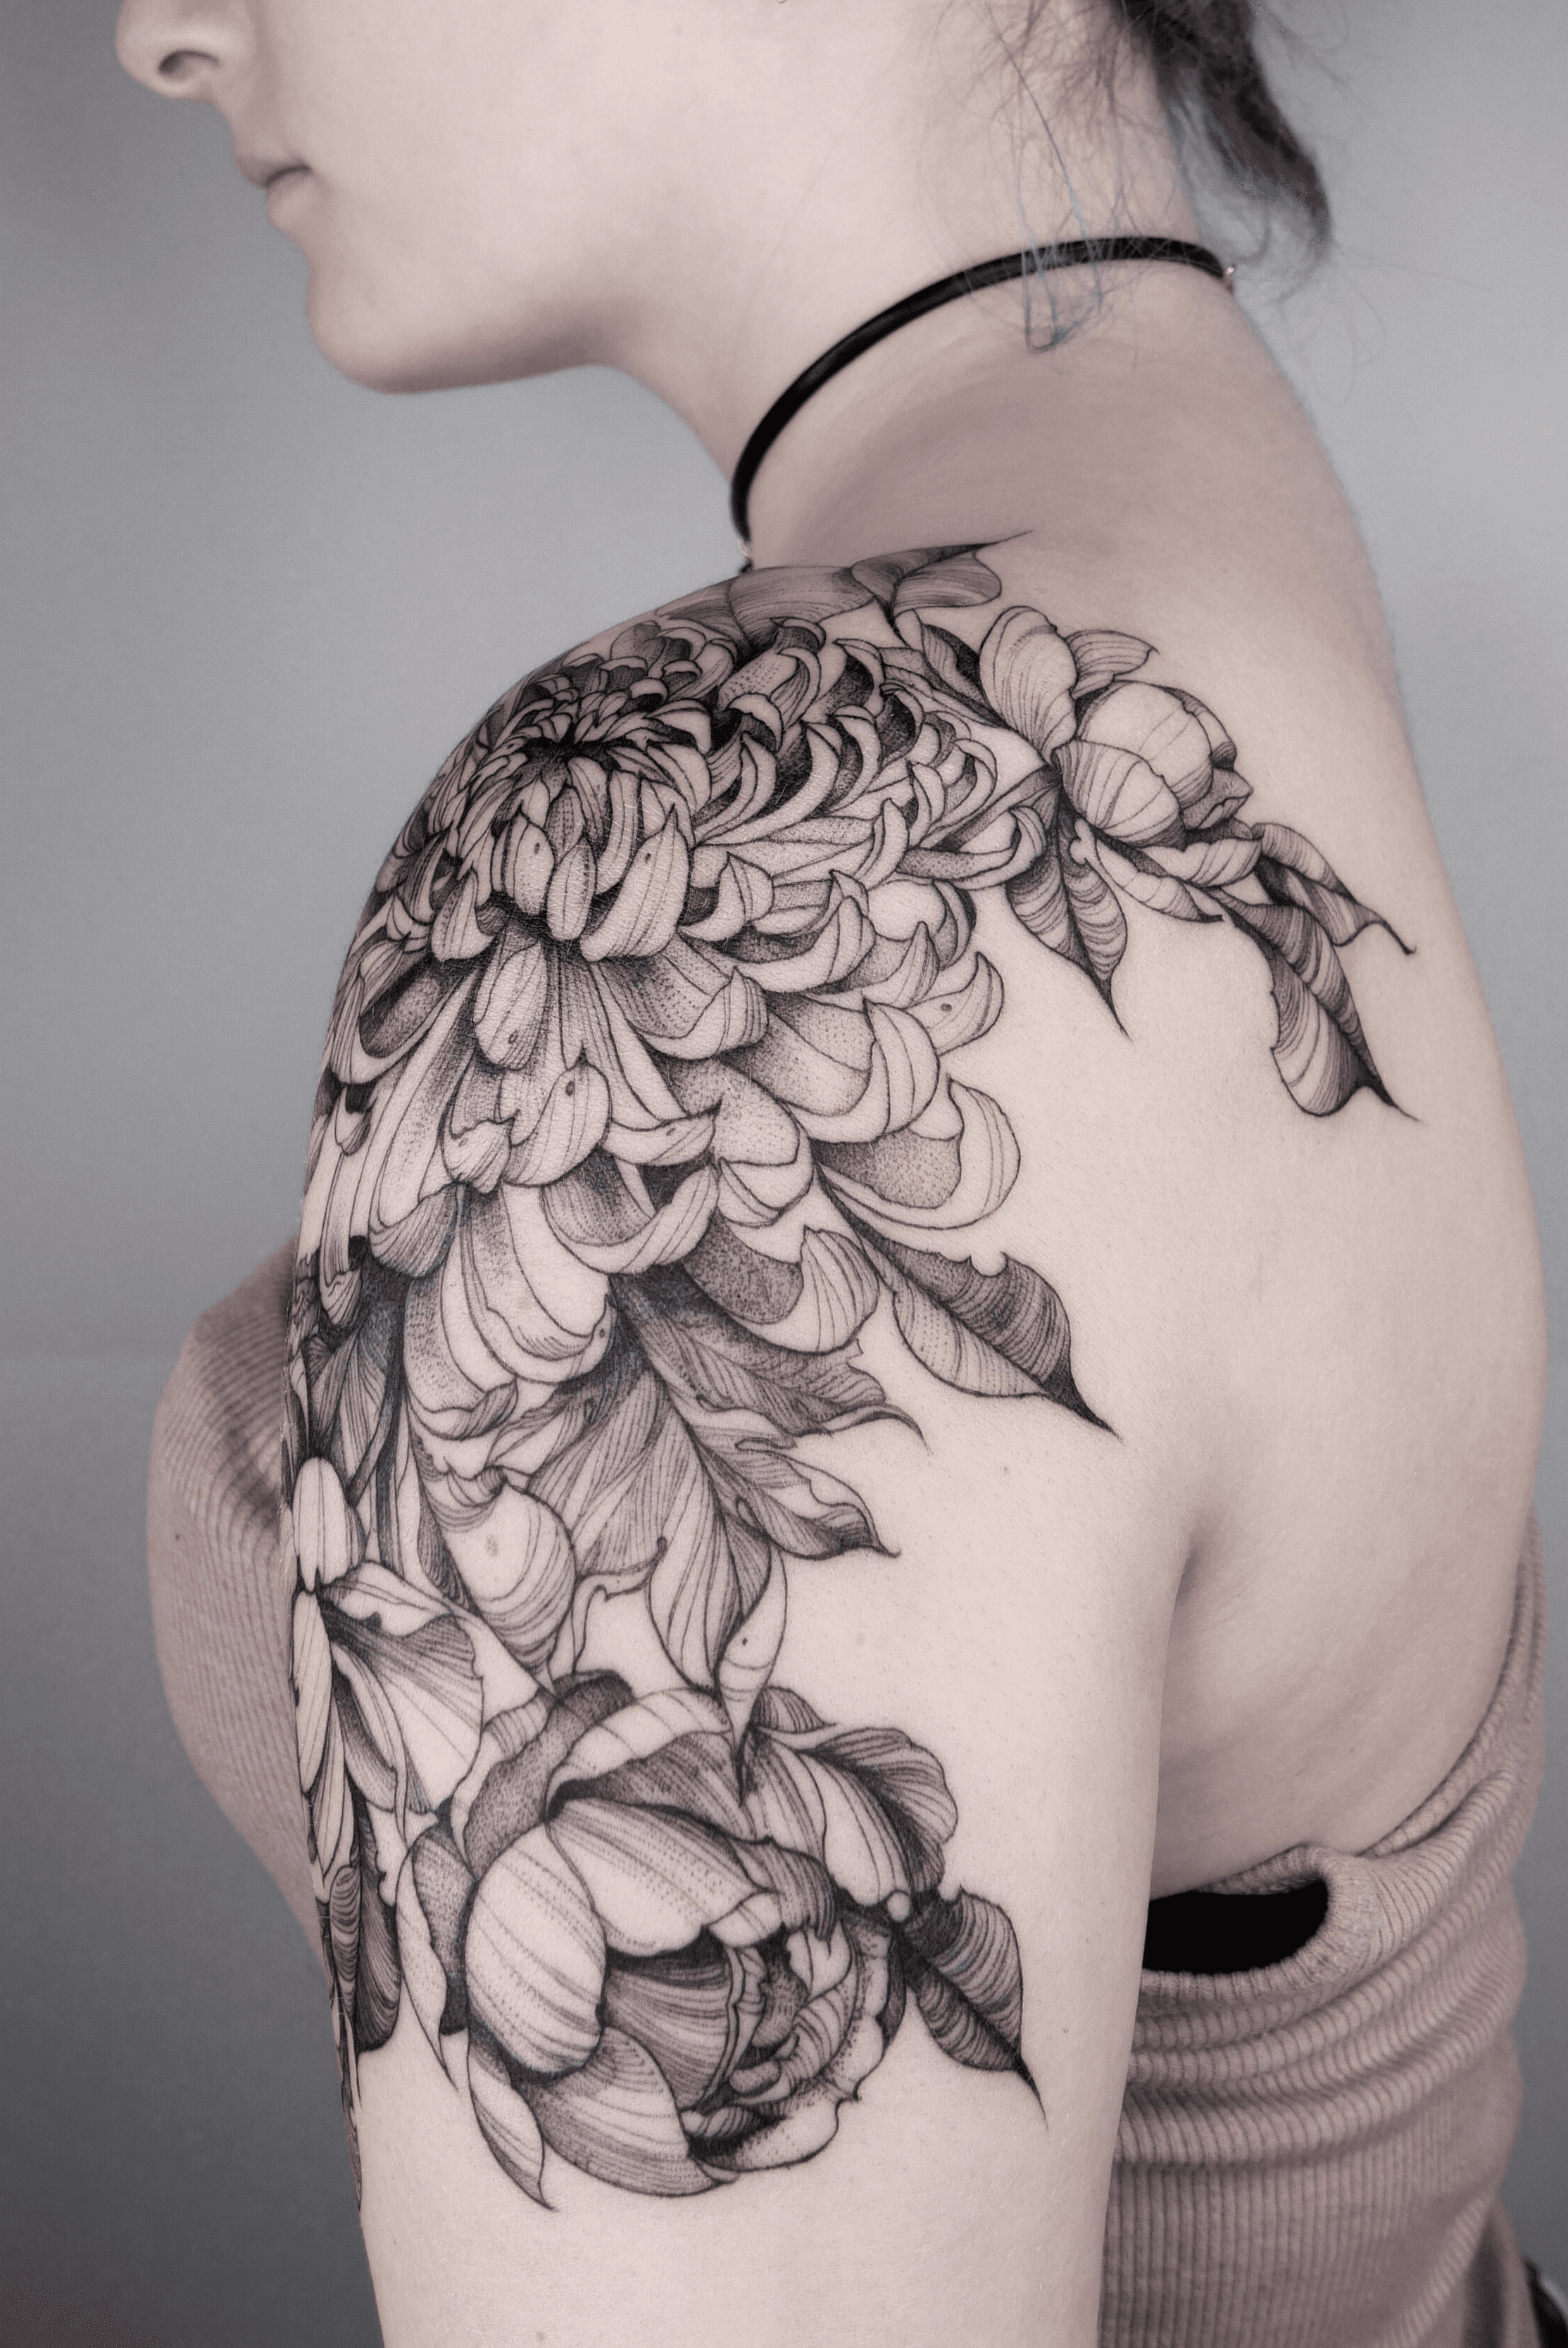 Matching chrysanthemum tattoos